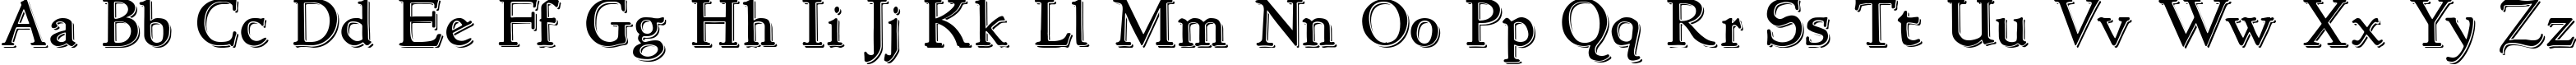 Пример написания английского алфавита шрифтом NewStyle Embossed